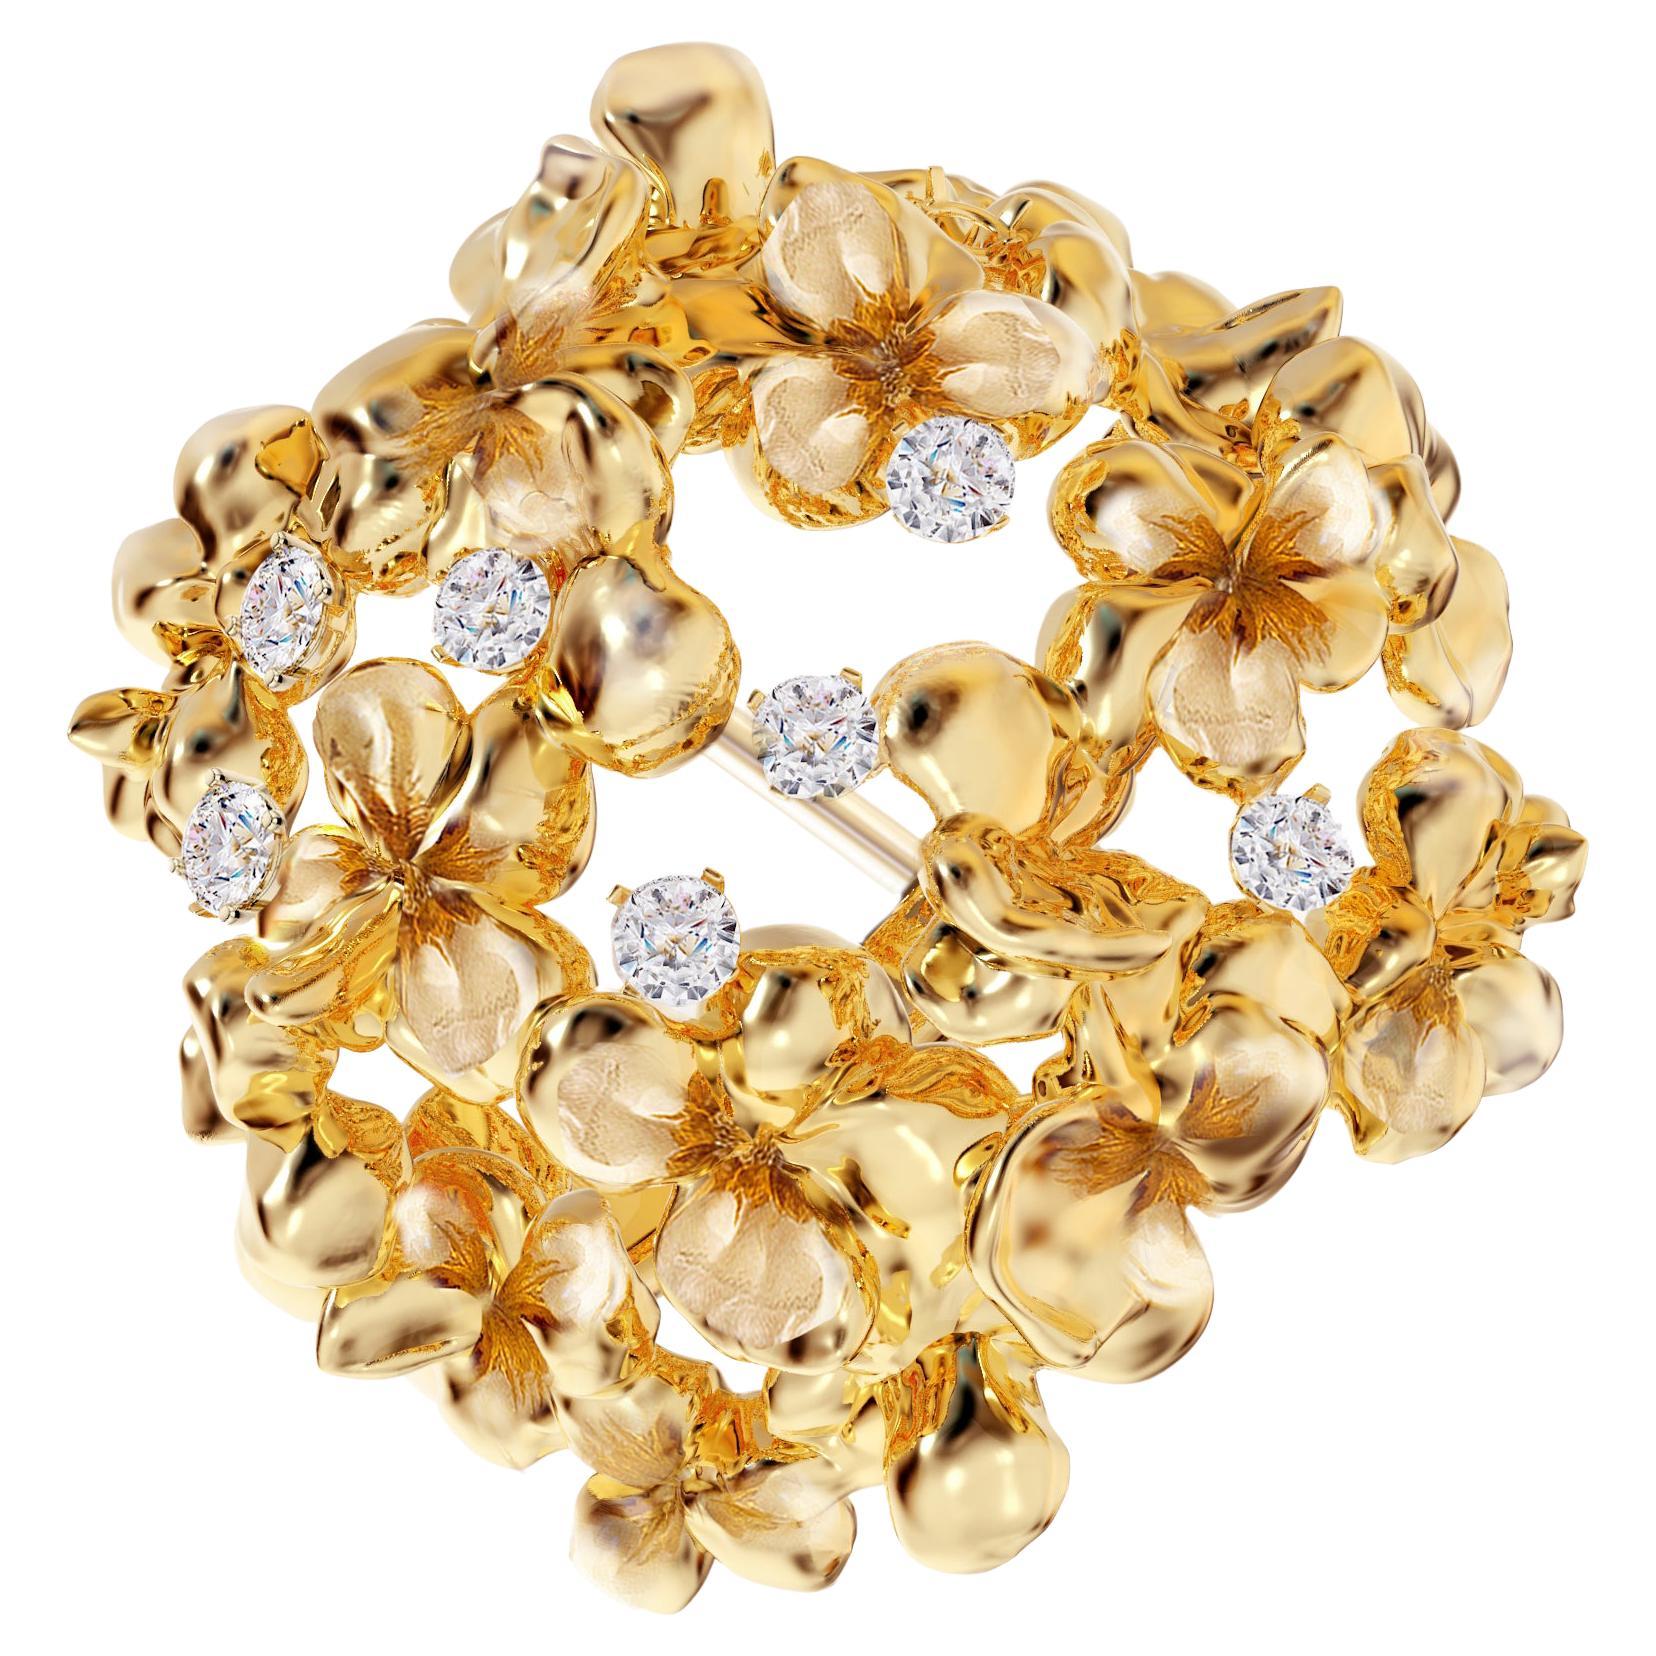 Ces boucles d'oreilles contemporaines Hortensia sont en or jaune 18 carats avec 14 diamants naturels ronds, VS, F-G. Le design sculptural ajoute des reflets supplémentaires à la surface de l'or. Les diamants ajoutent les clins d'œil délicats. Cette